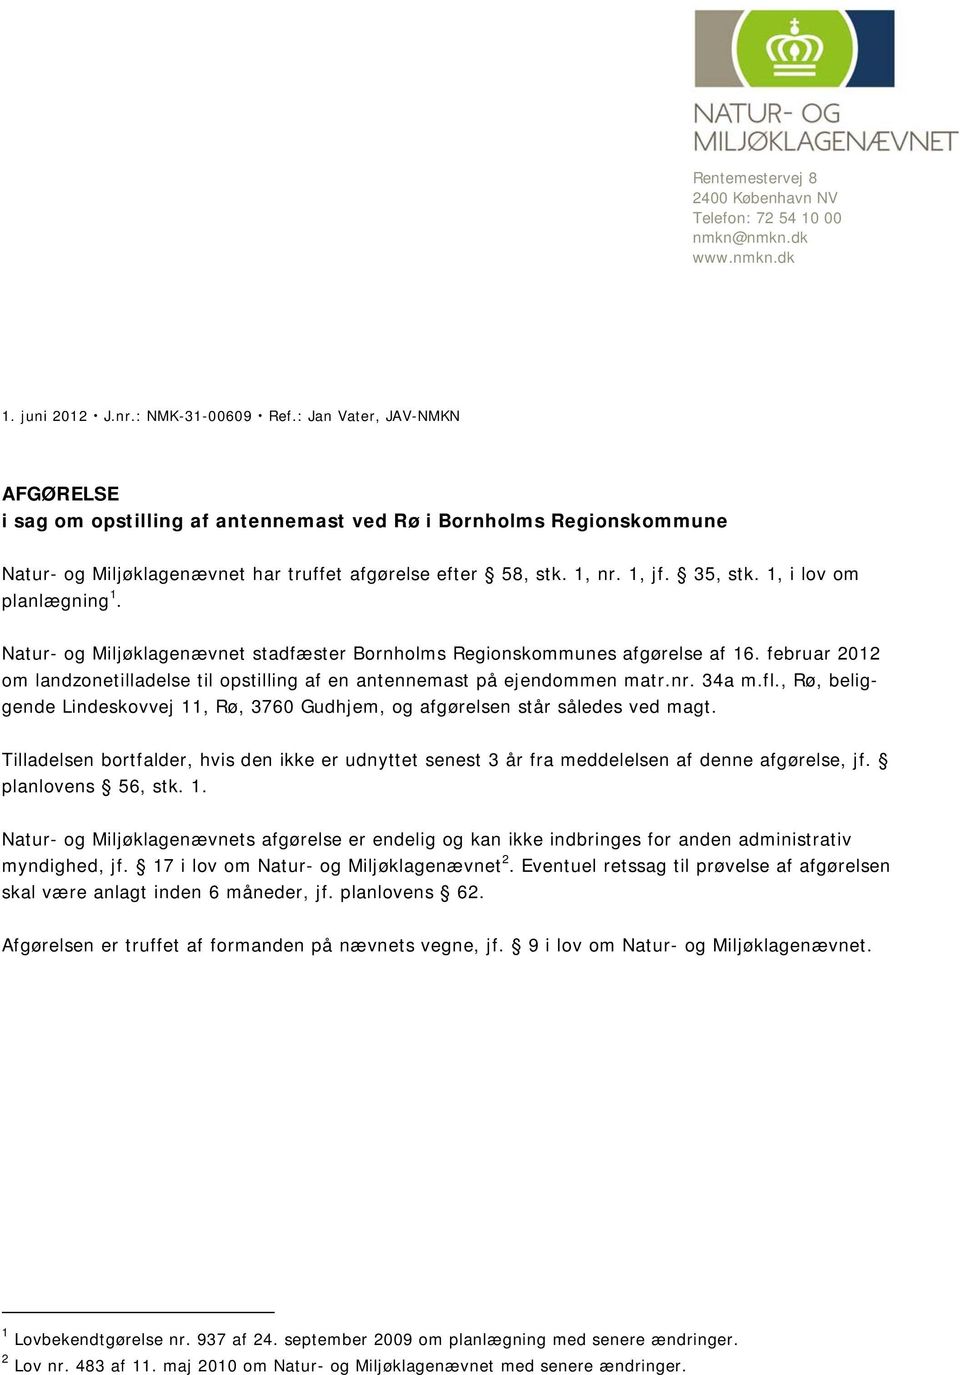 1, i lov om planlægning 1. Natur- og Miljøklagenævnet stadfæster Bornholms Regionskommunes afgørelse af 16. februar 2012 om landzonetilladelse til opstilling af en antennemast på ejendommen matr.nr.